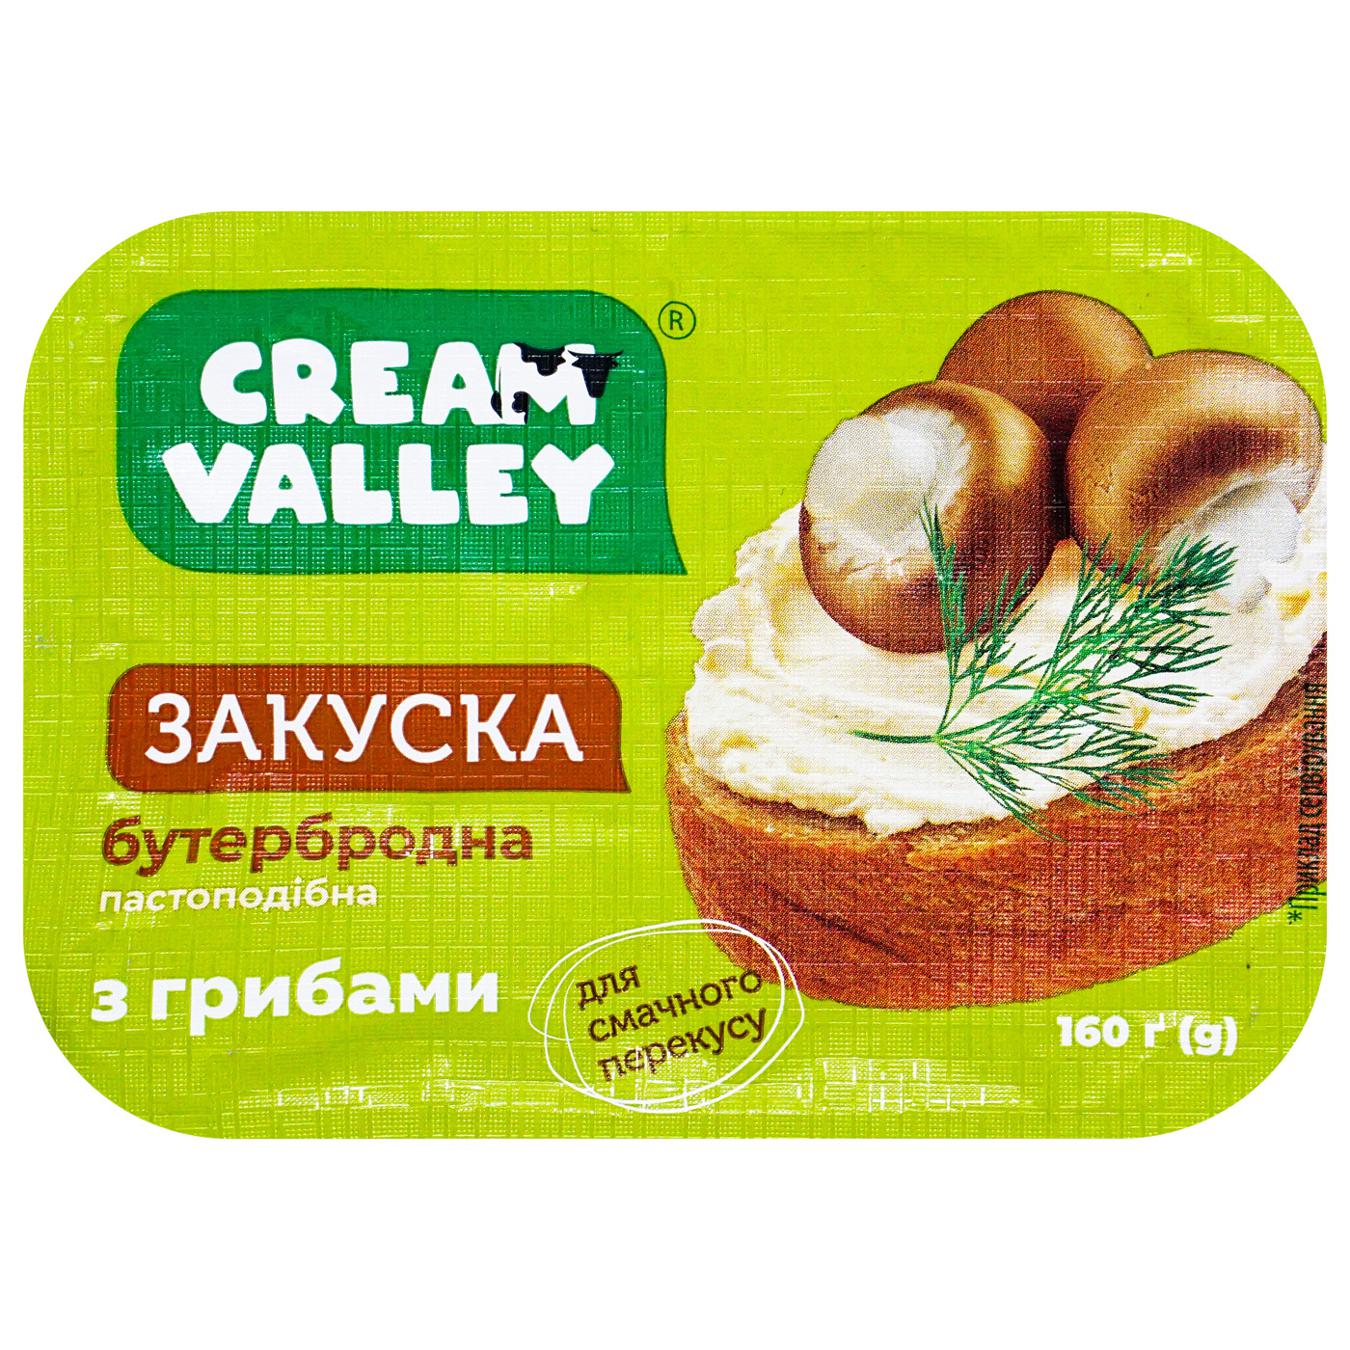 Закуска Cream Valley пастообразная бутербродная с грибами 160г